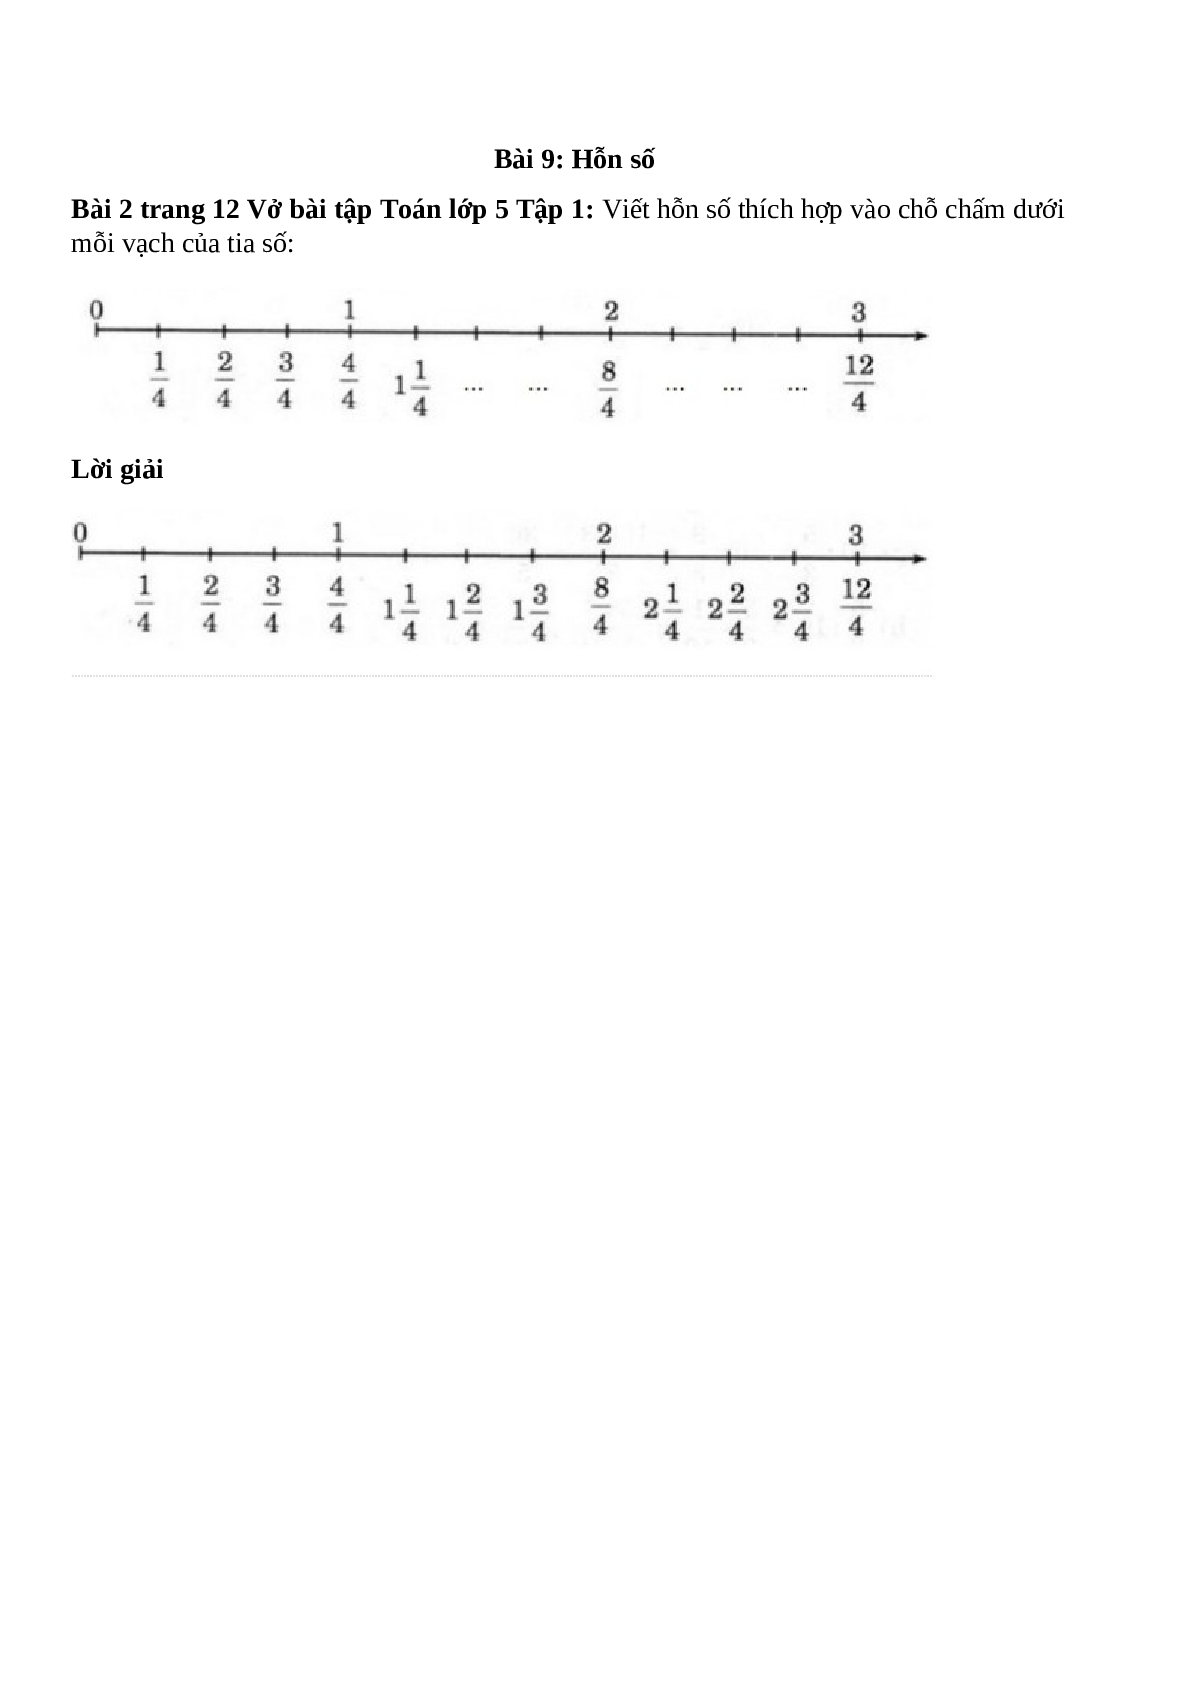 Viết hỗn số thích hợp vào chỗ chấm dưới mỗi vạch của tia số (trang 1)